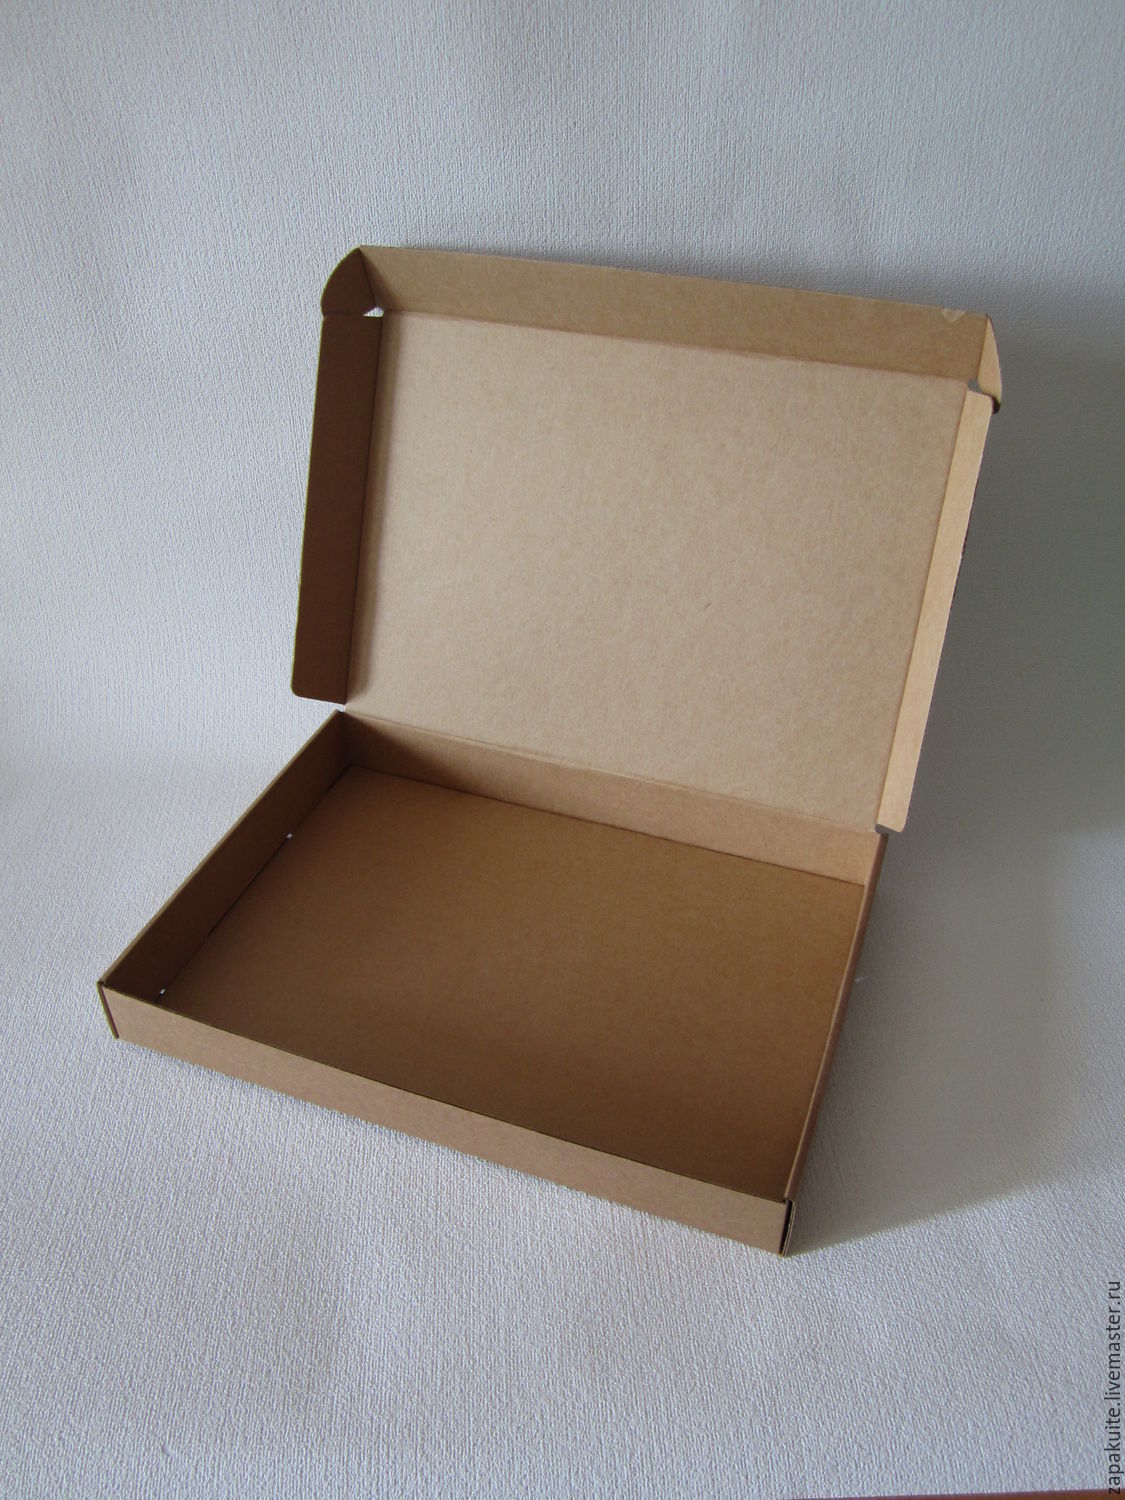 Стол для упаковки коробок